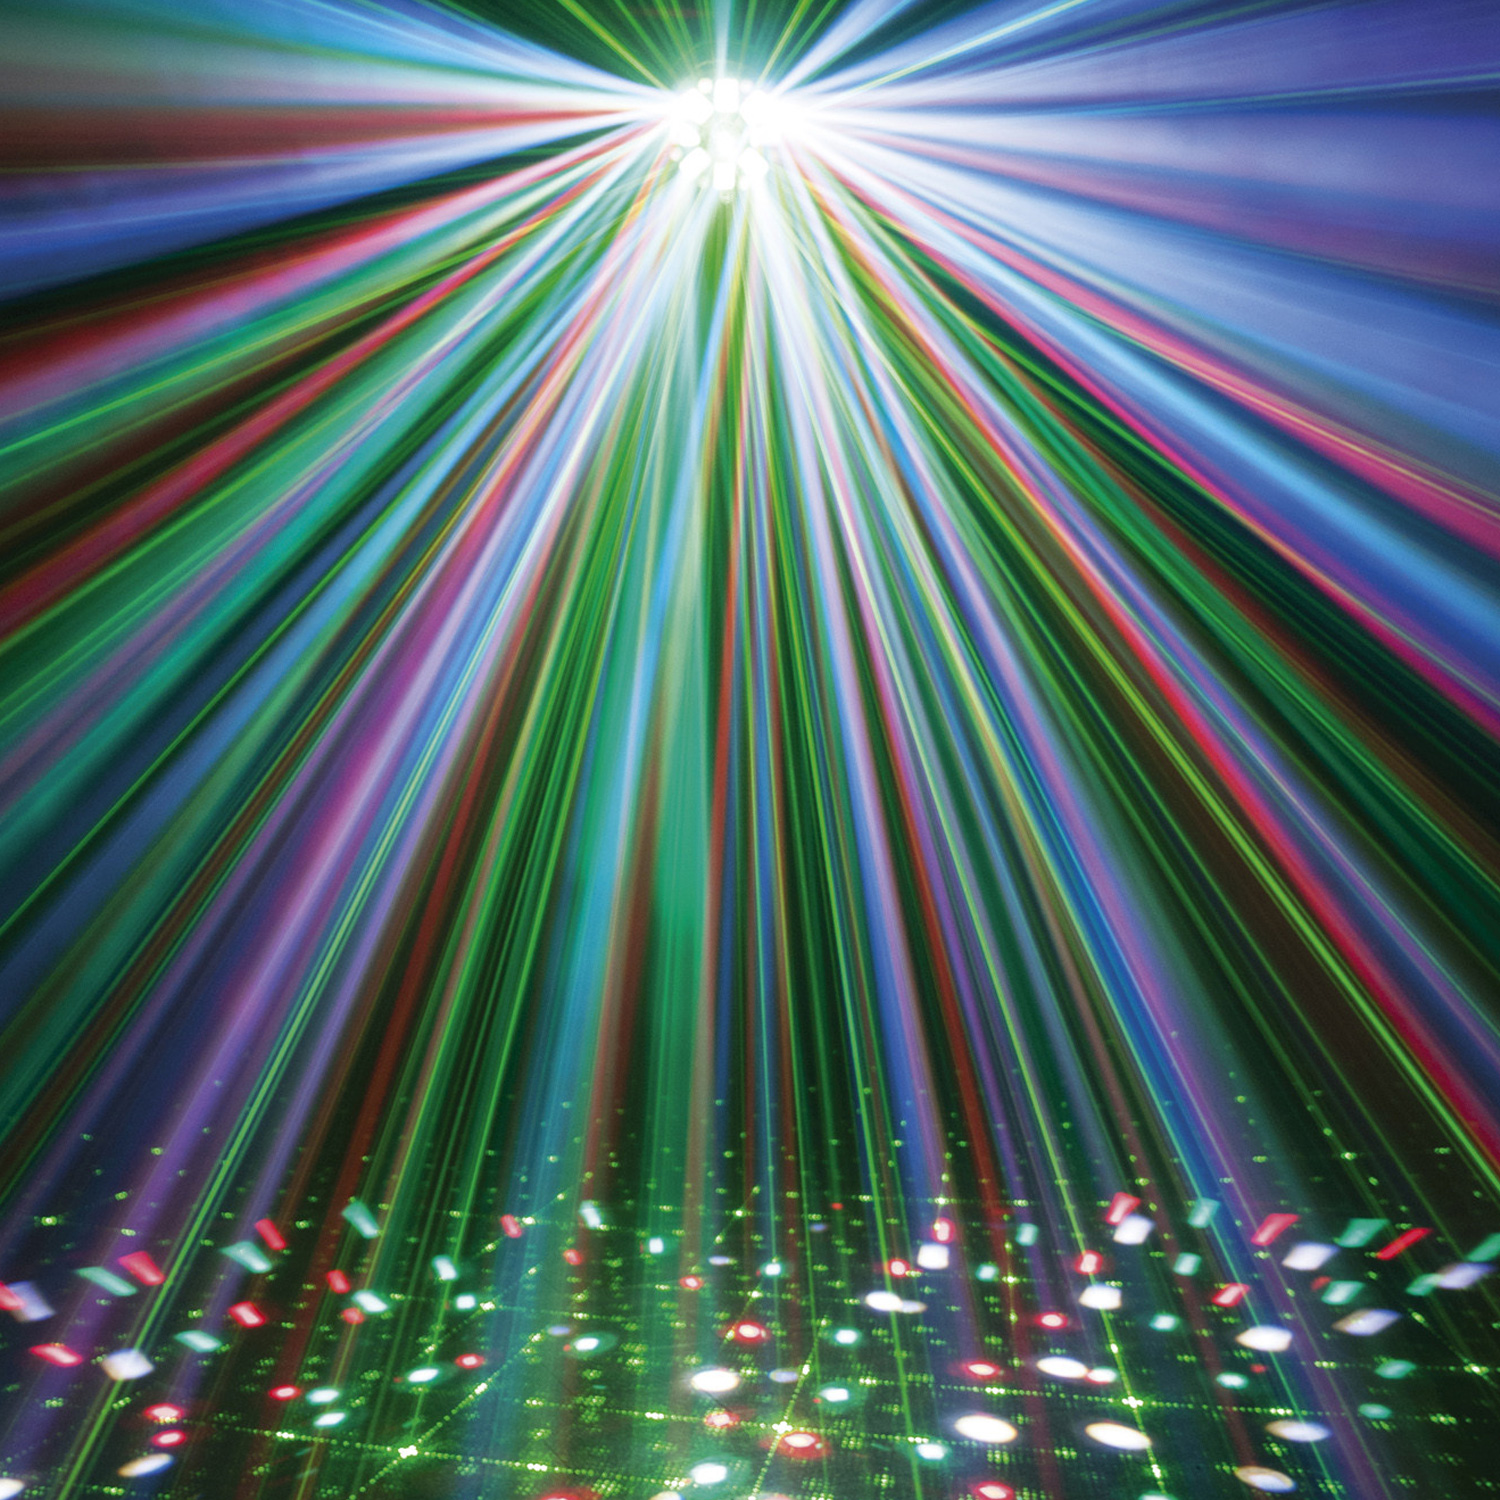 DOMINATOR LED-Laser-Strobe Action-Lichteffekt